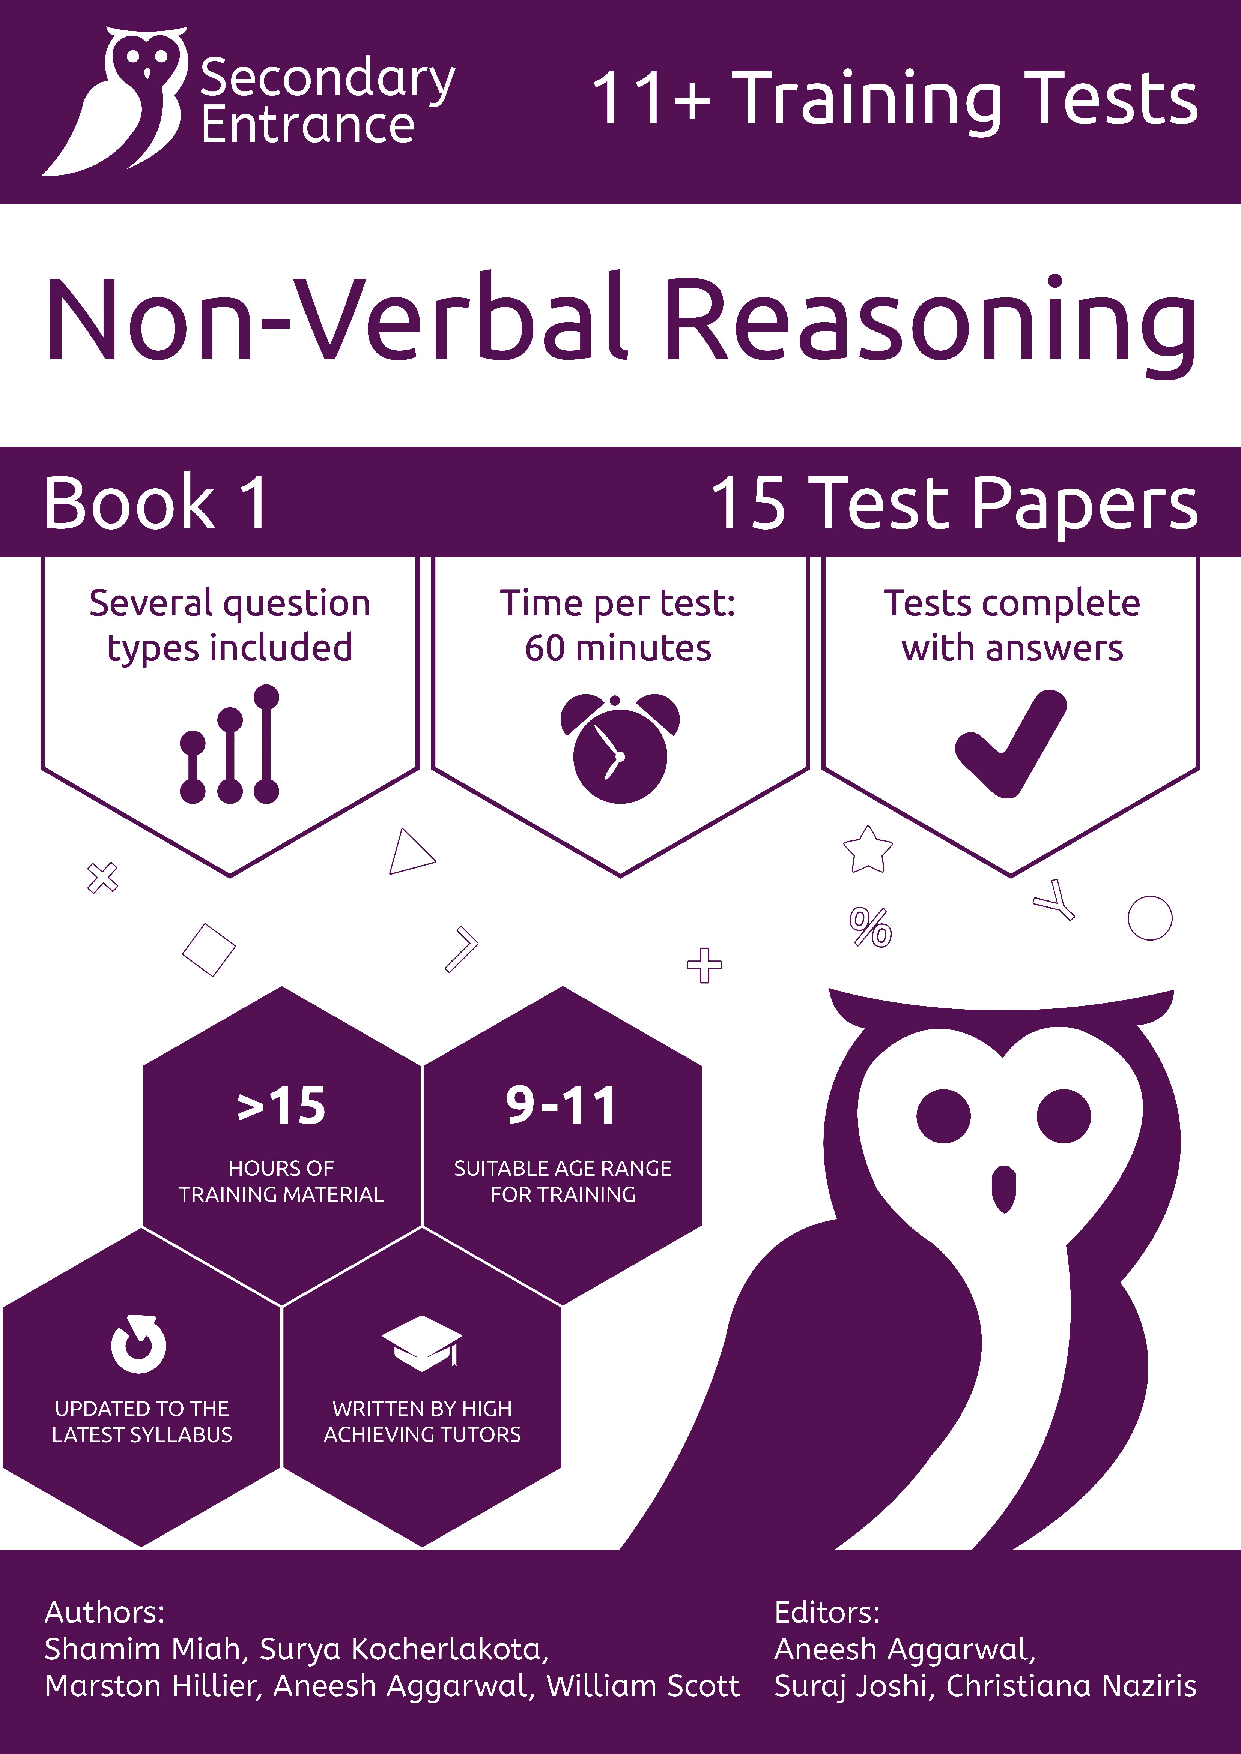 11+ Non-Verbal Reasoning syllabus